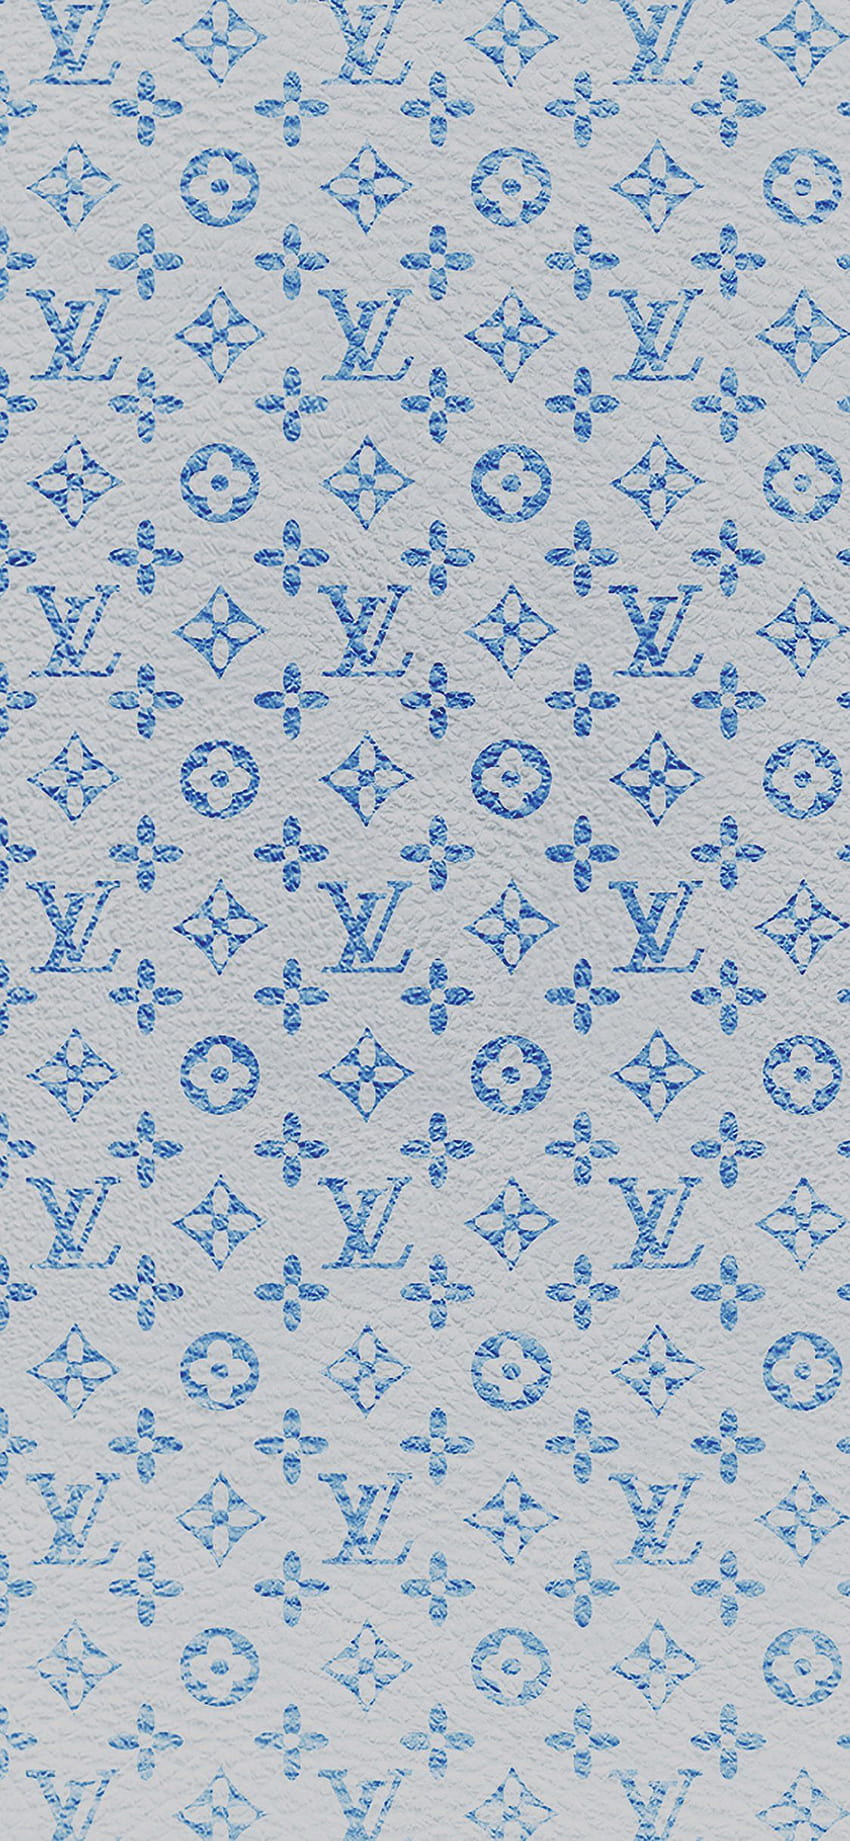 Blue LV wallpaper  Aesthetic iphone wallpaper, Cute patterns wallpaper, Louis  vuitton iphone wallpaper